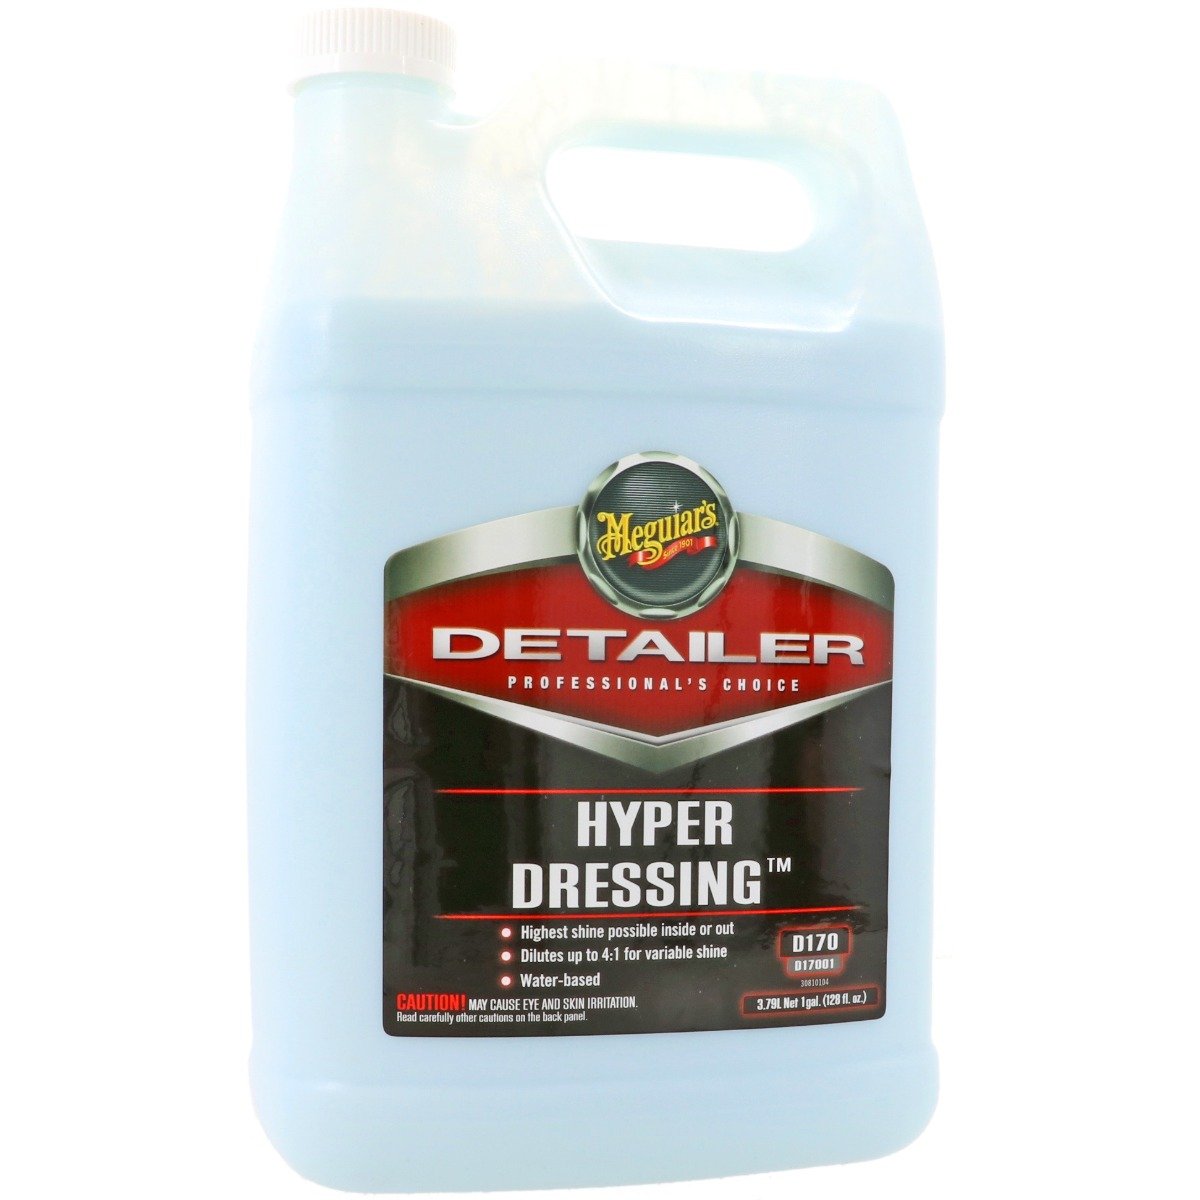 Hyper Dressing - 3780ml